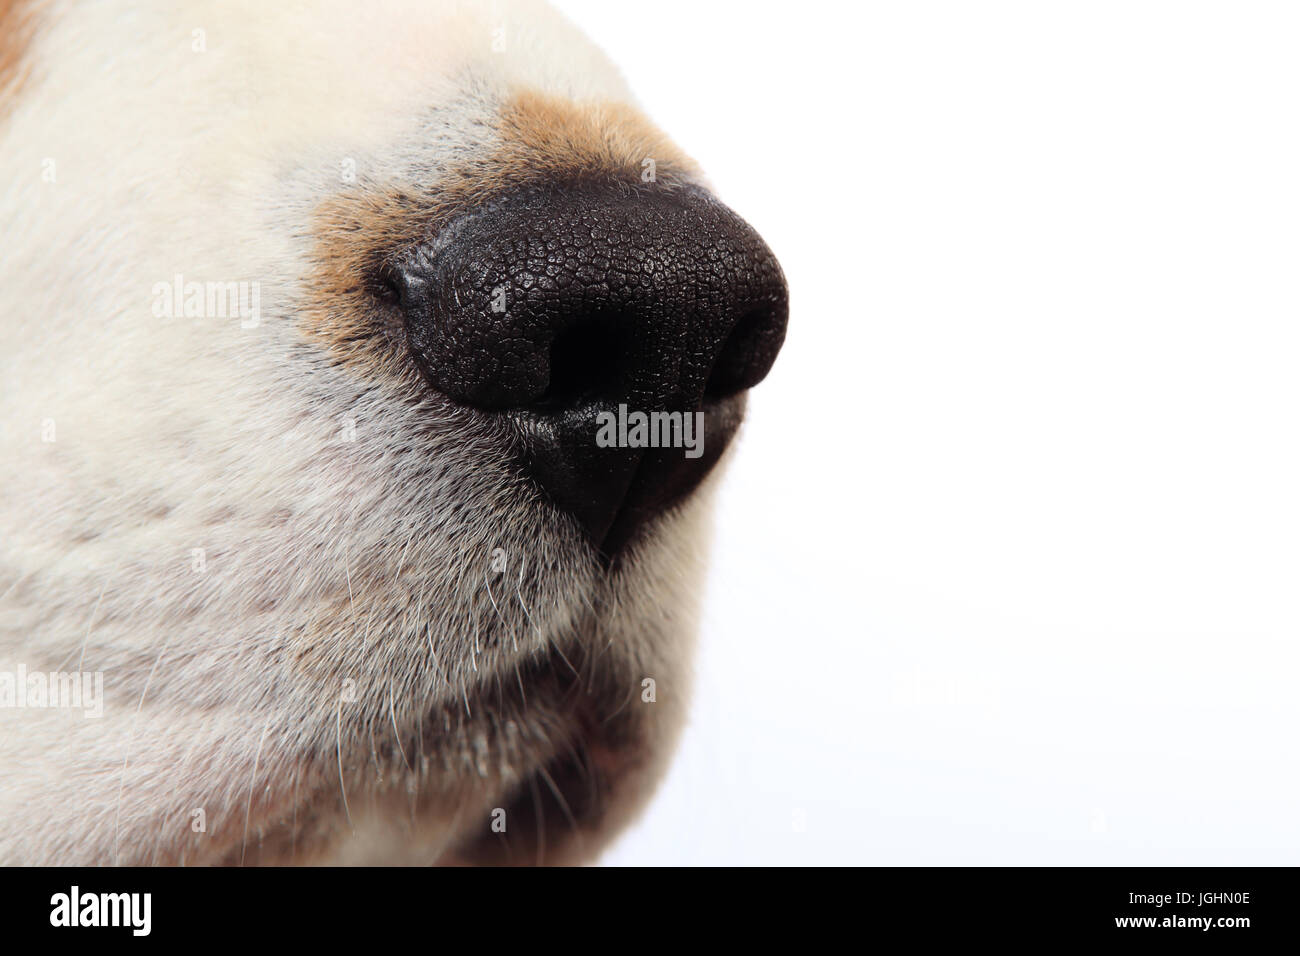 Dog nose close-up. Dog's nose isolated on white background. Stock Photo